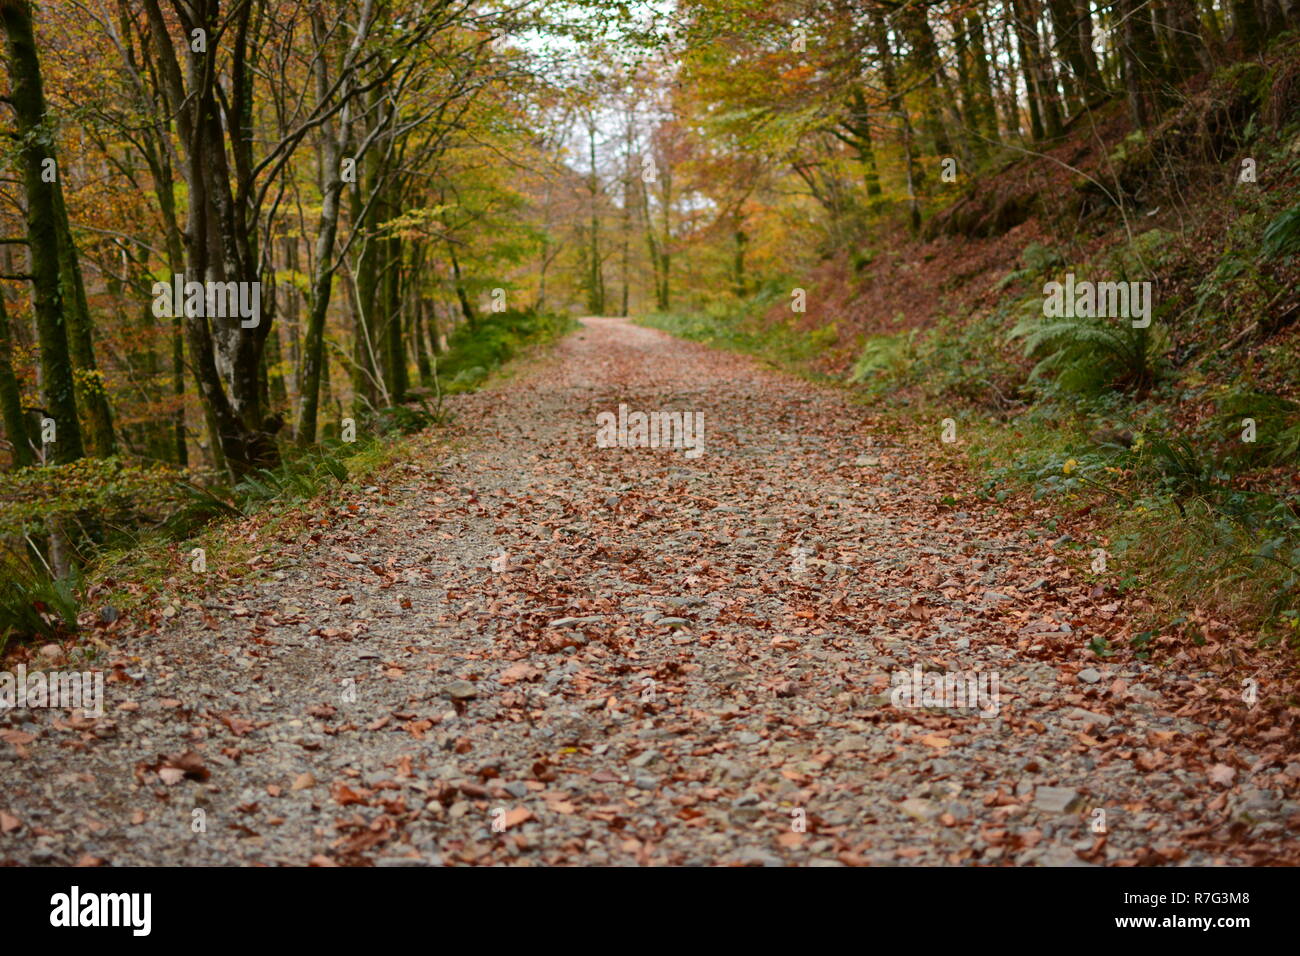 Welsh Mountain voie couverte de feuilles d'automne Banque D'Images